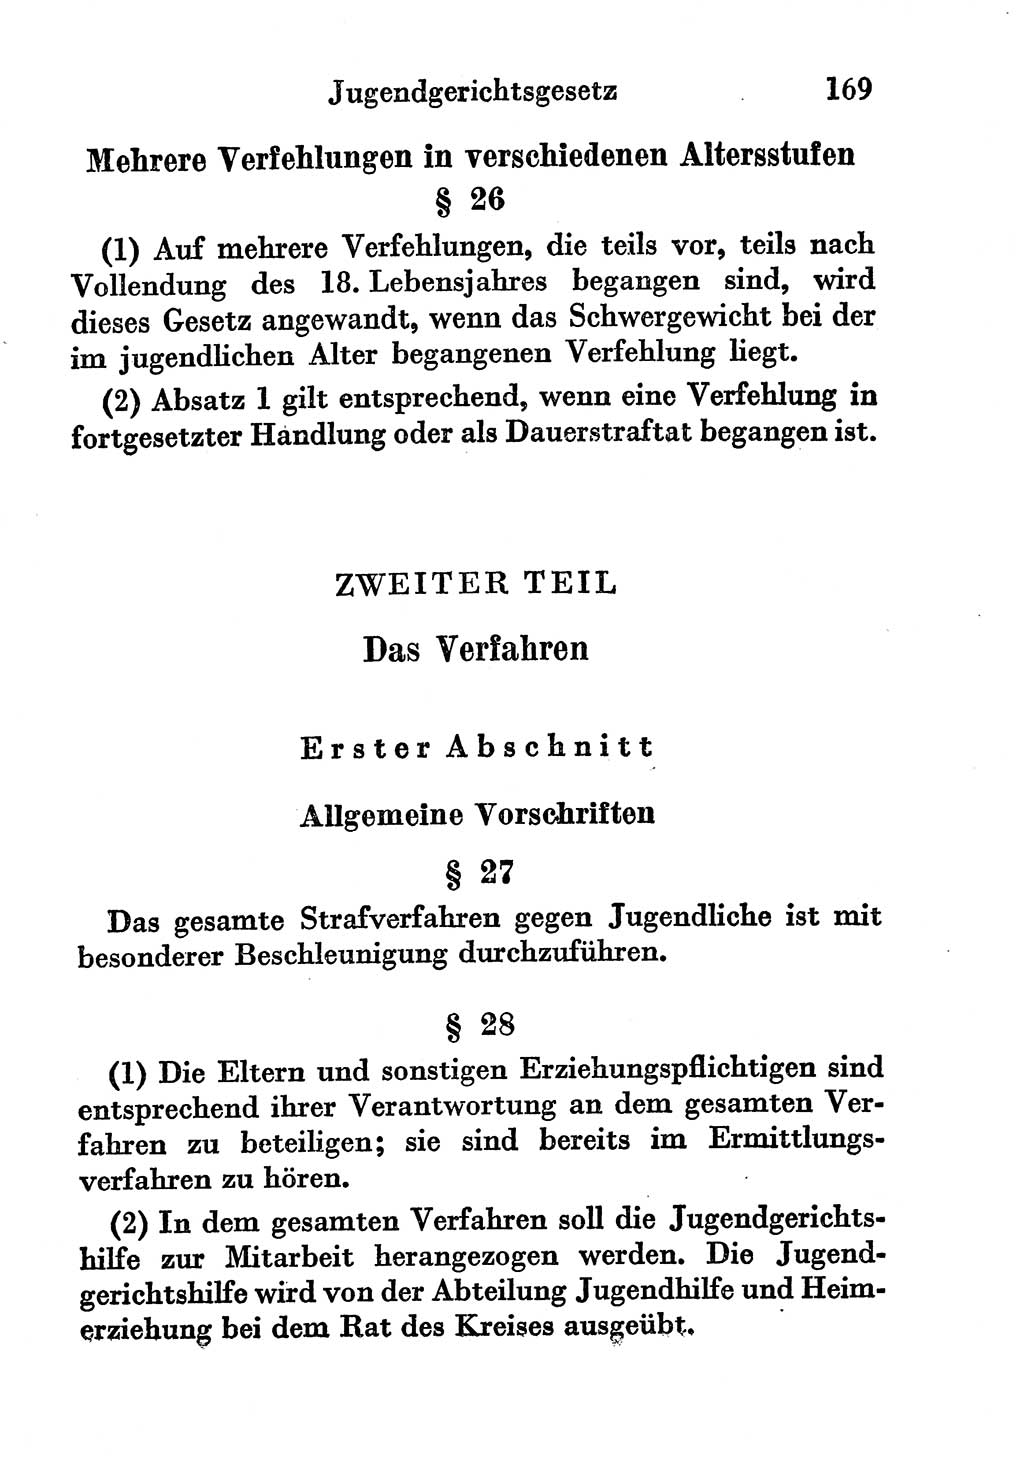 Strafgesetzbuch (StGB) und andere Strafgesetze [Deutsche Demokratische Republik (DDR)] 1956, Seite 169 (StGB Strafges. DDR 1956, S. 169)